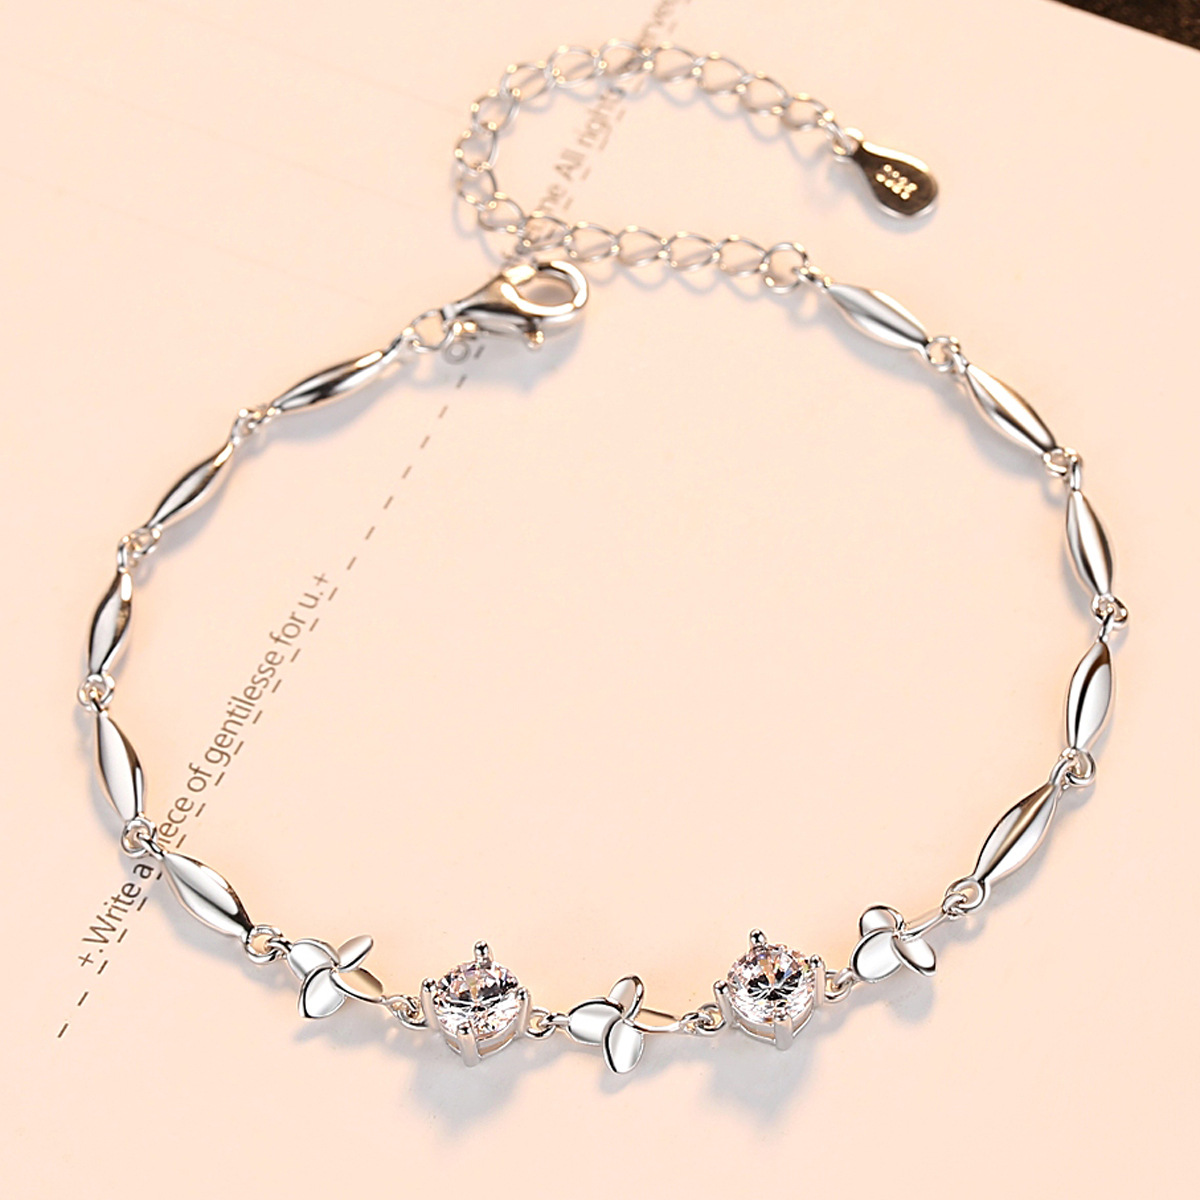 3a Cz Sterling Silver Four-Leaf Clover Bracelet